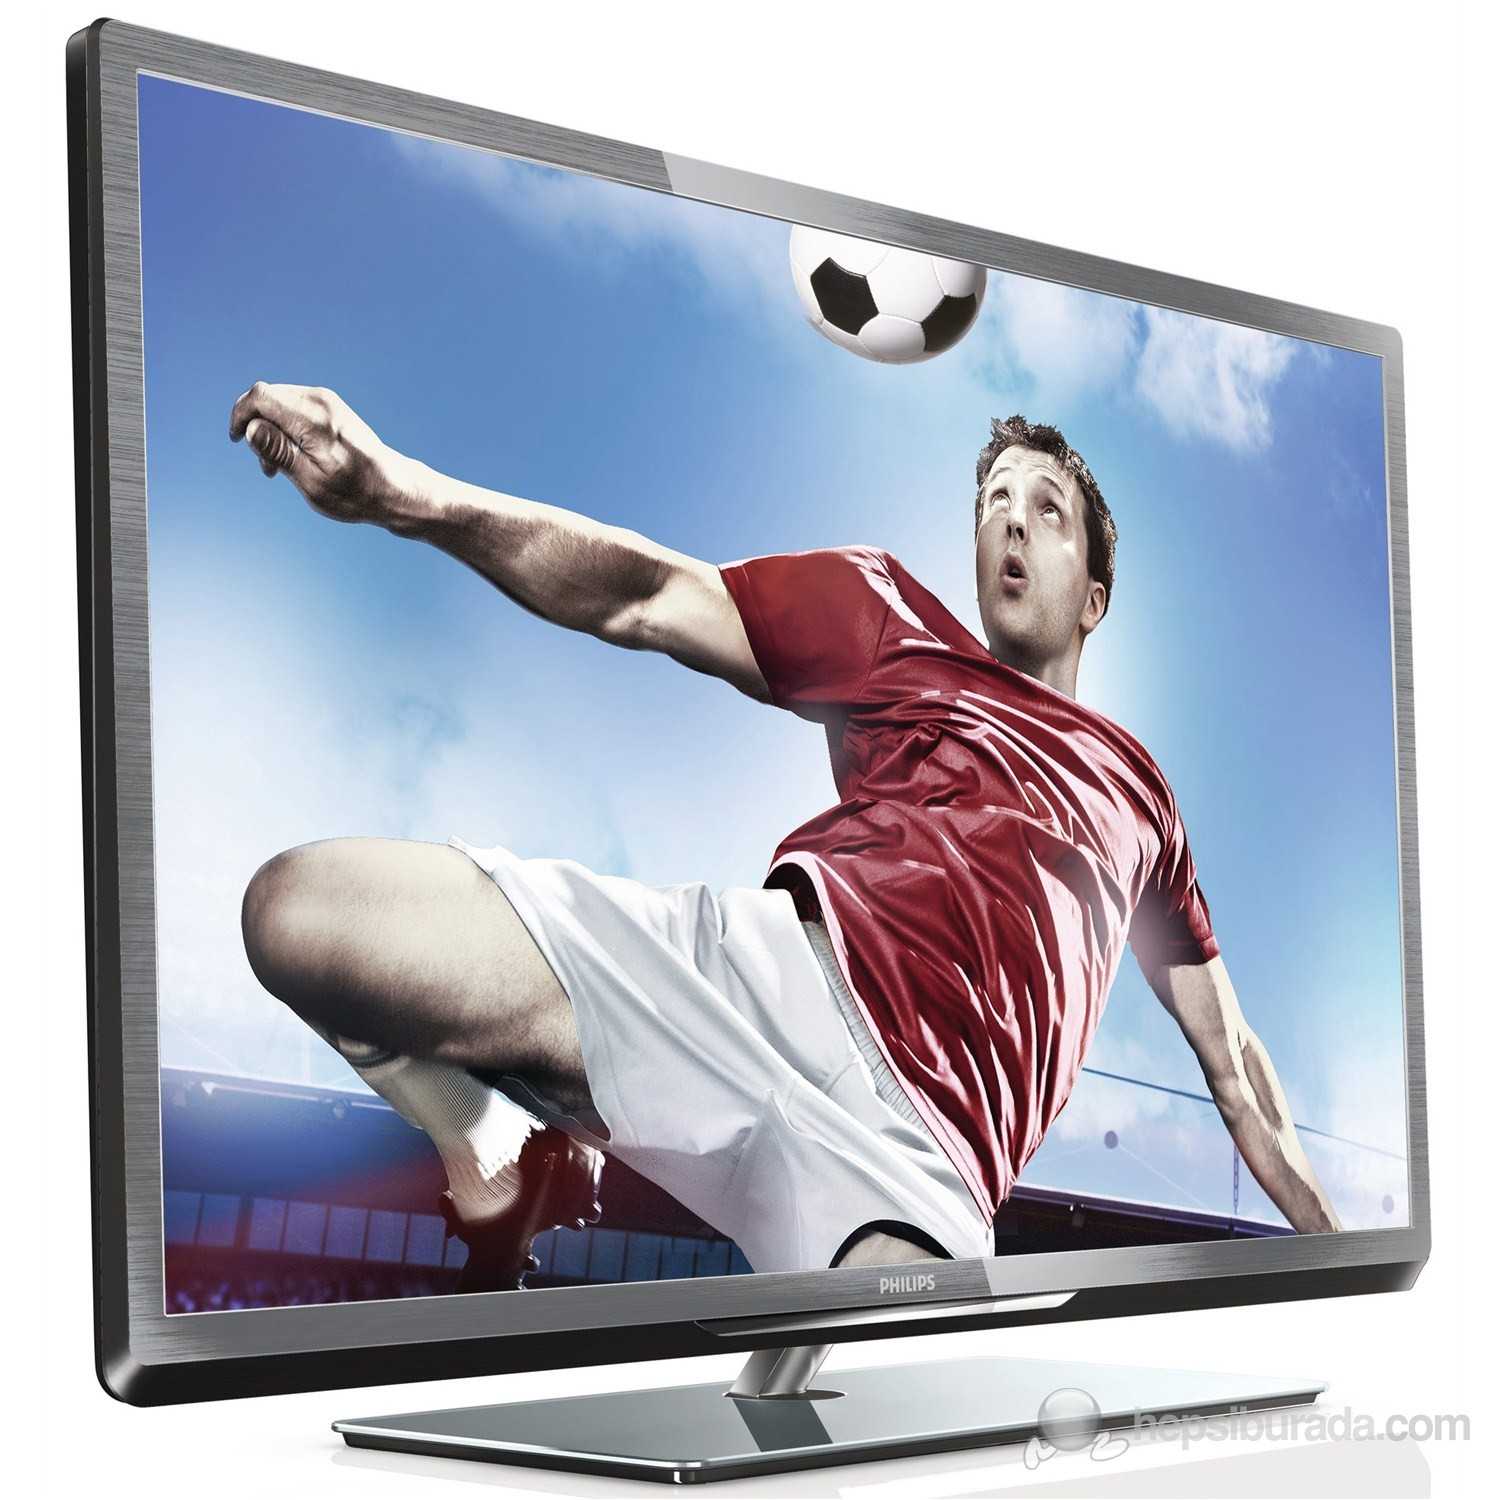 Philips 46pfl3108k - купить , скидки, цена, отзывы, обзор, характеристики - телевизоры